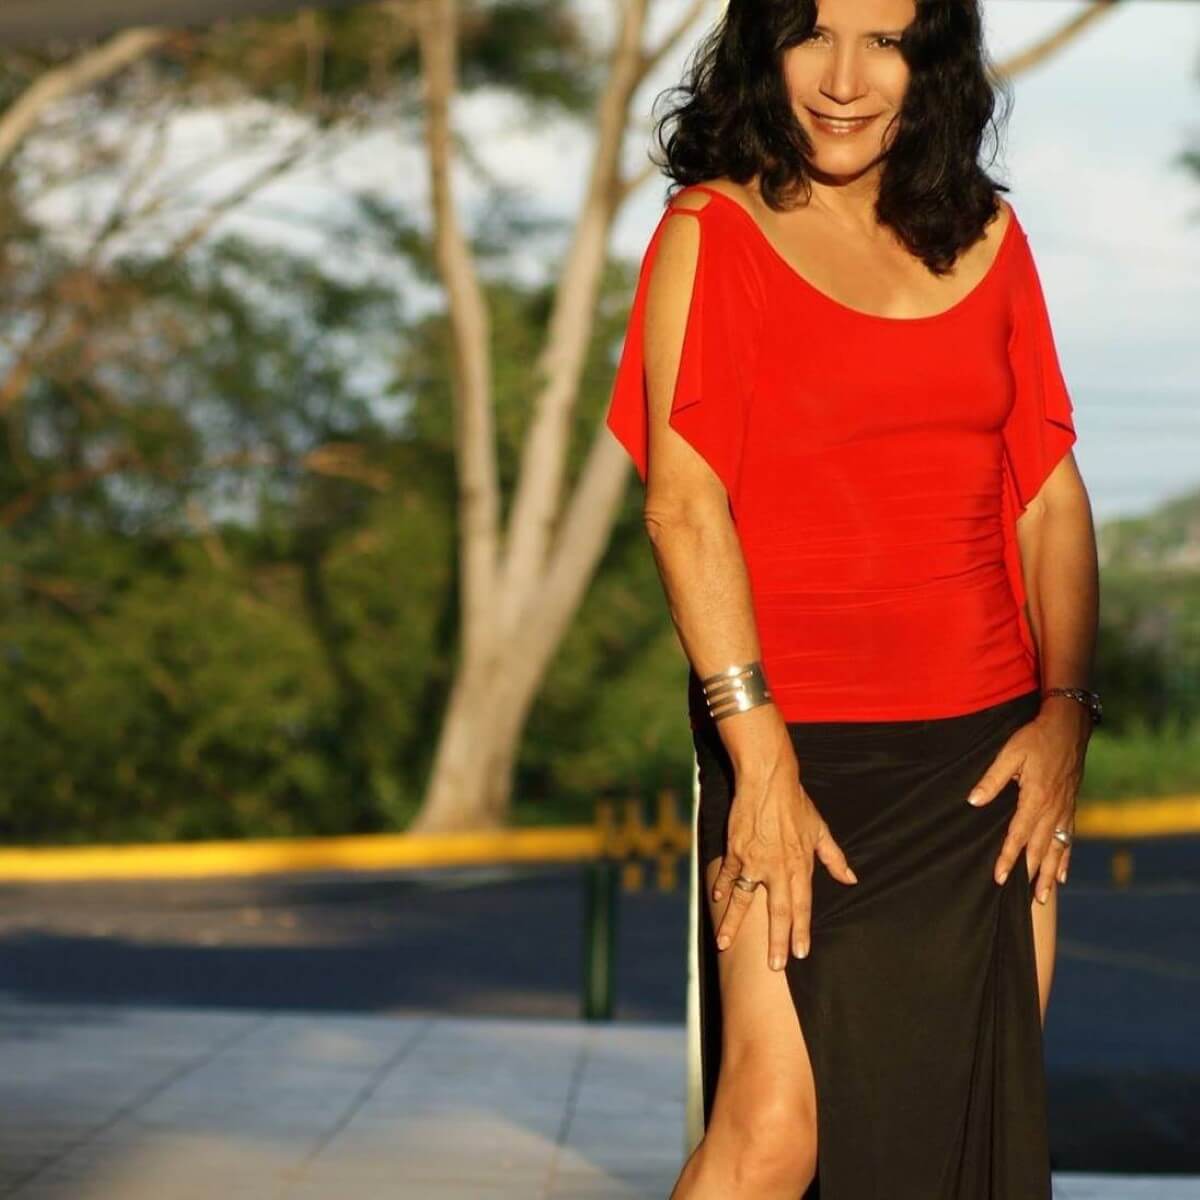 Evelyn Sandra Martínez Orozco nació el 30 de mayo de 1948 en Managua